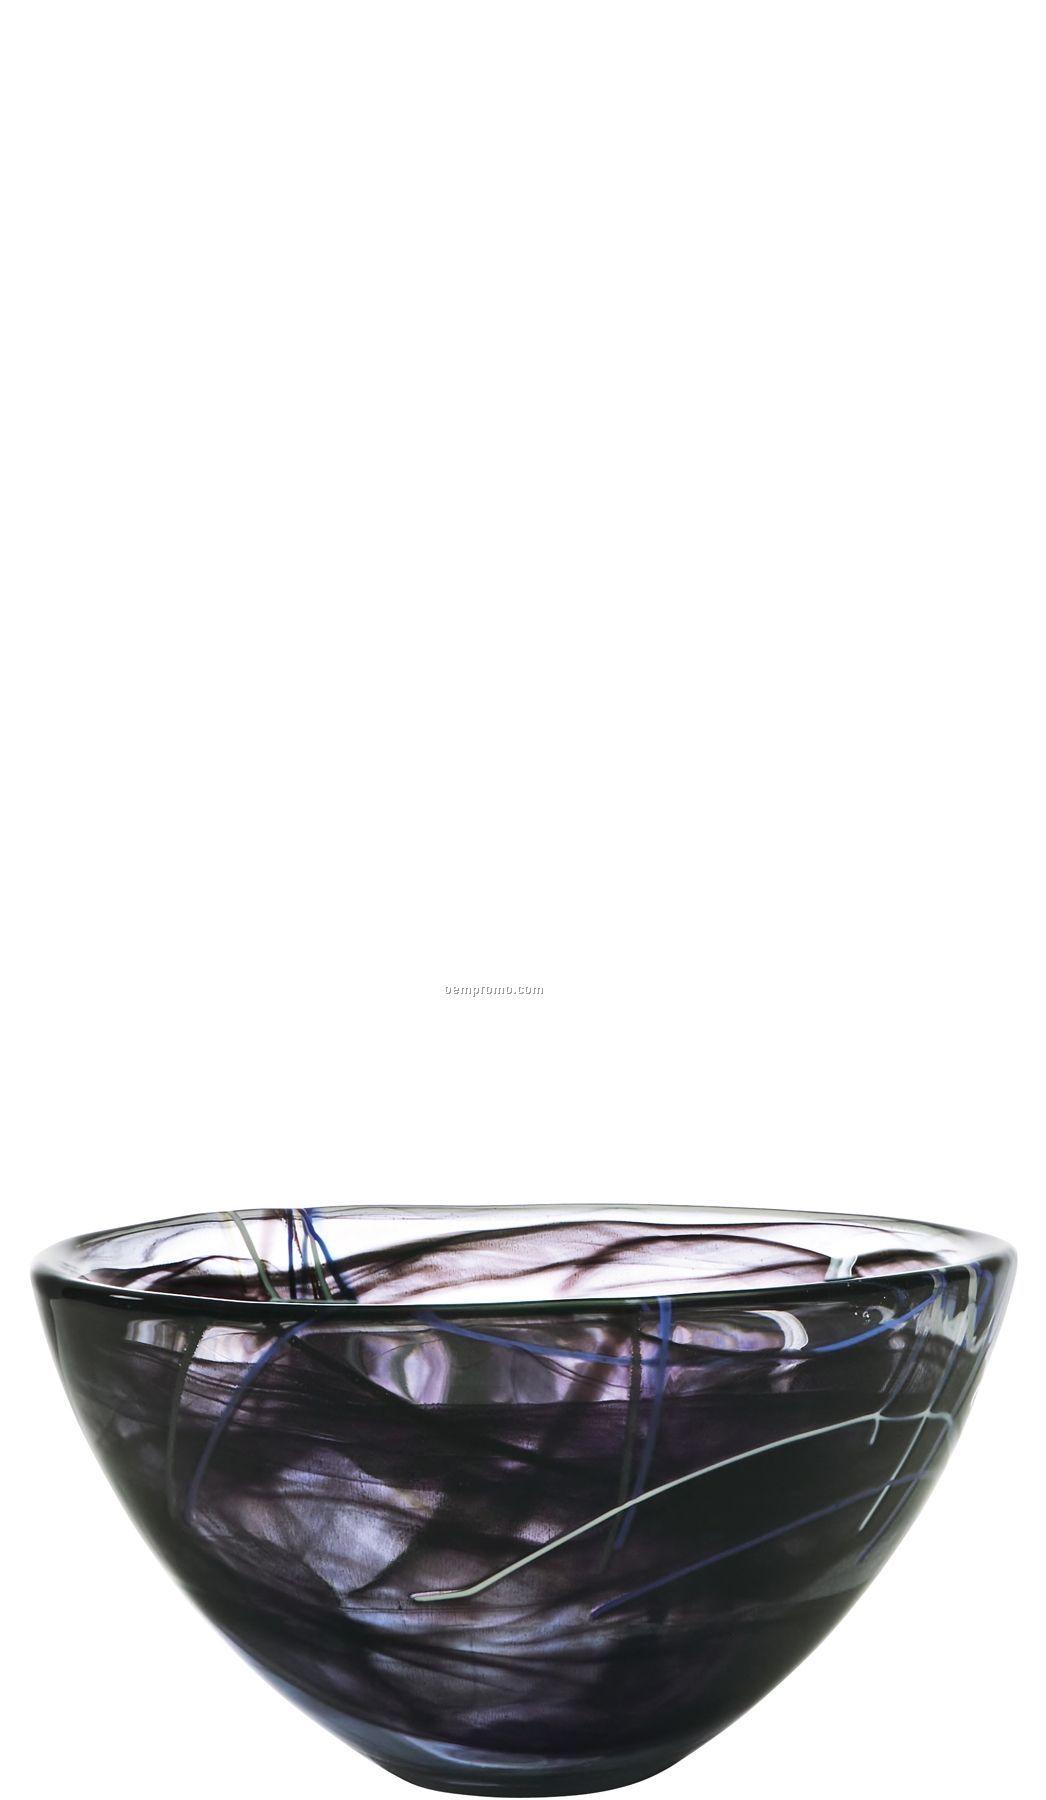 Contrast Medium Swirl Crystal Bowl By Anna Ehrner (Black)